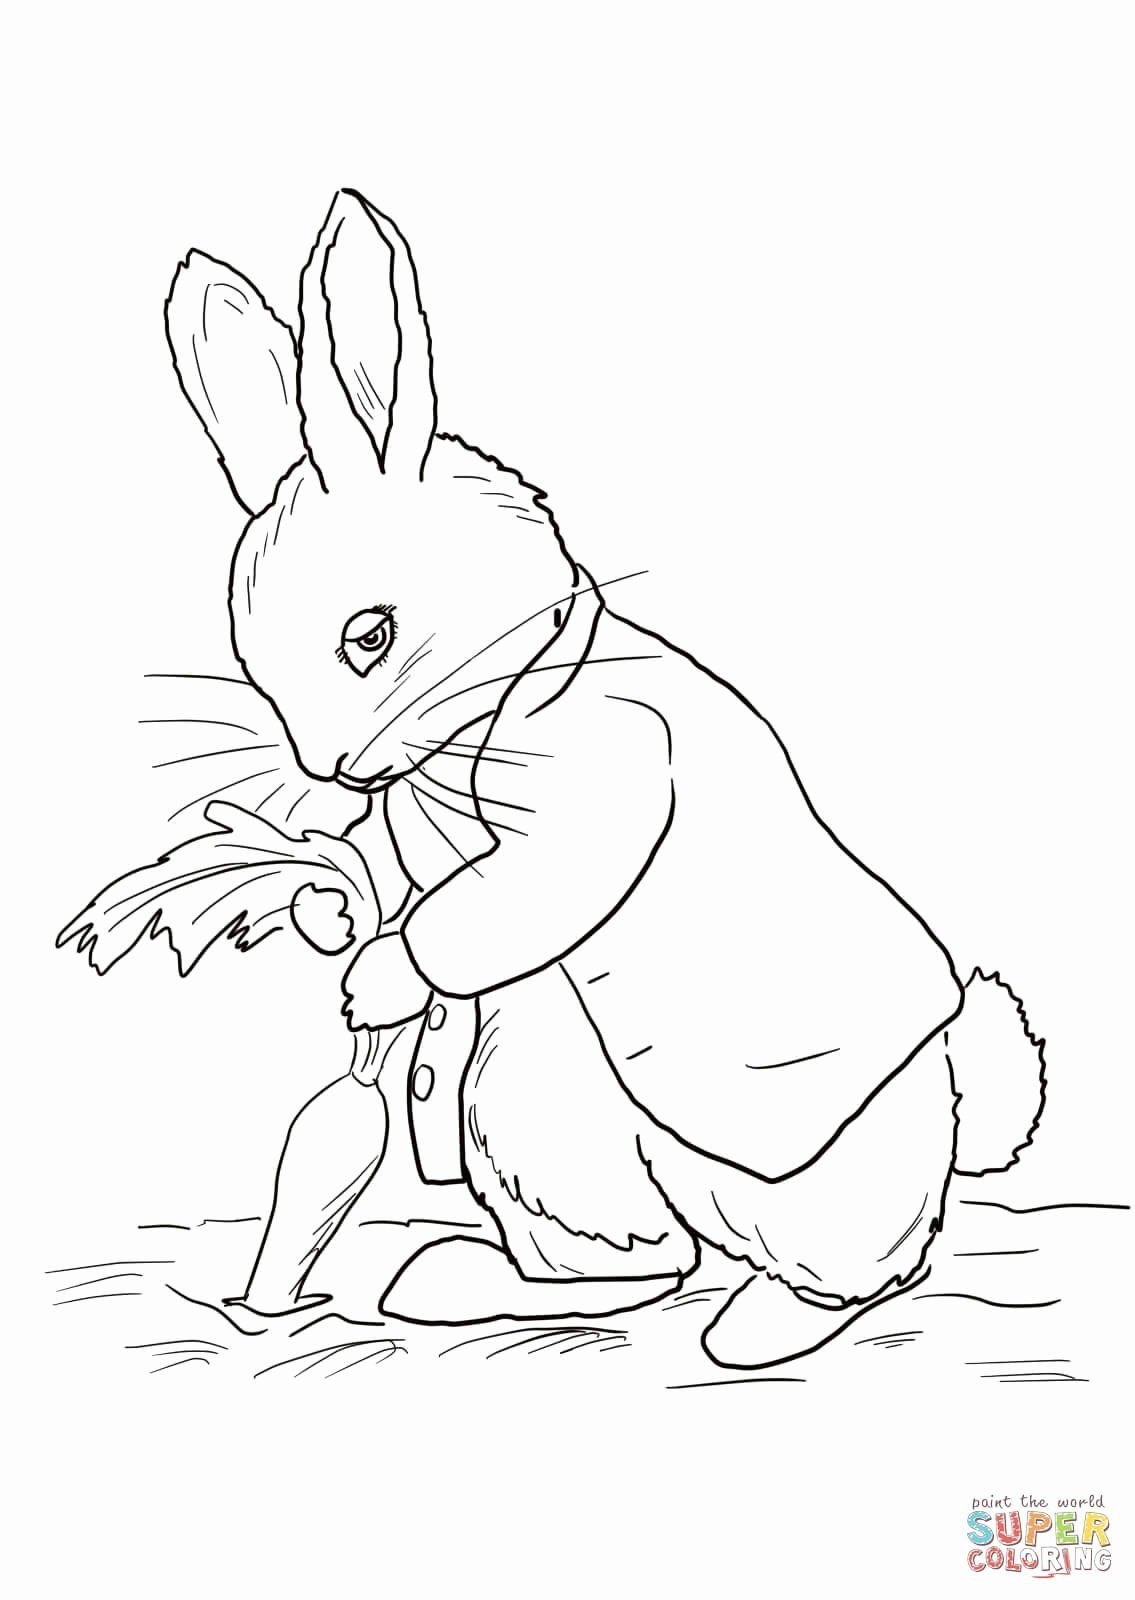 Кролик Питер 2